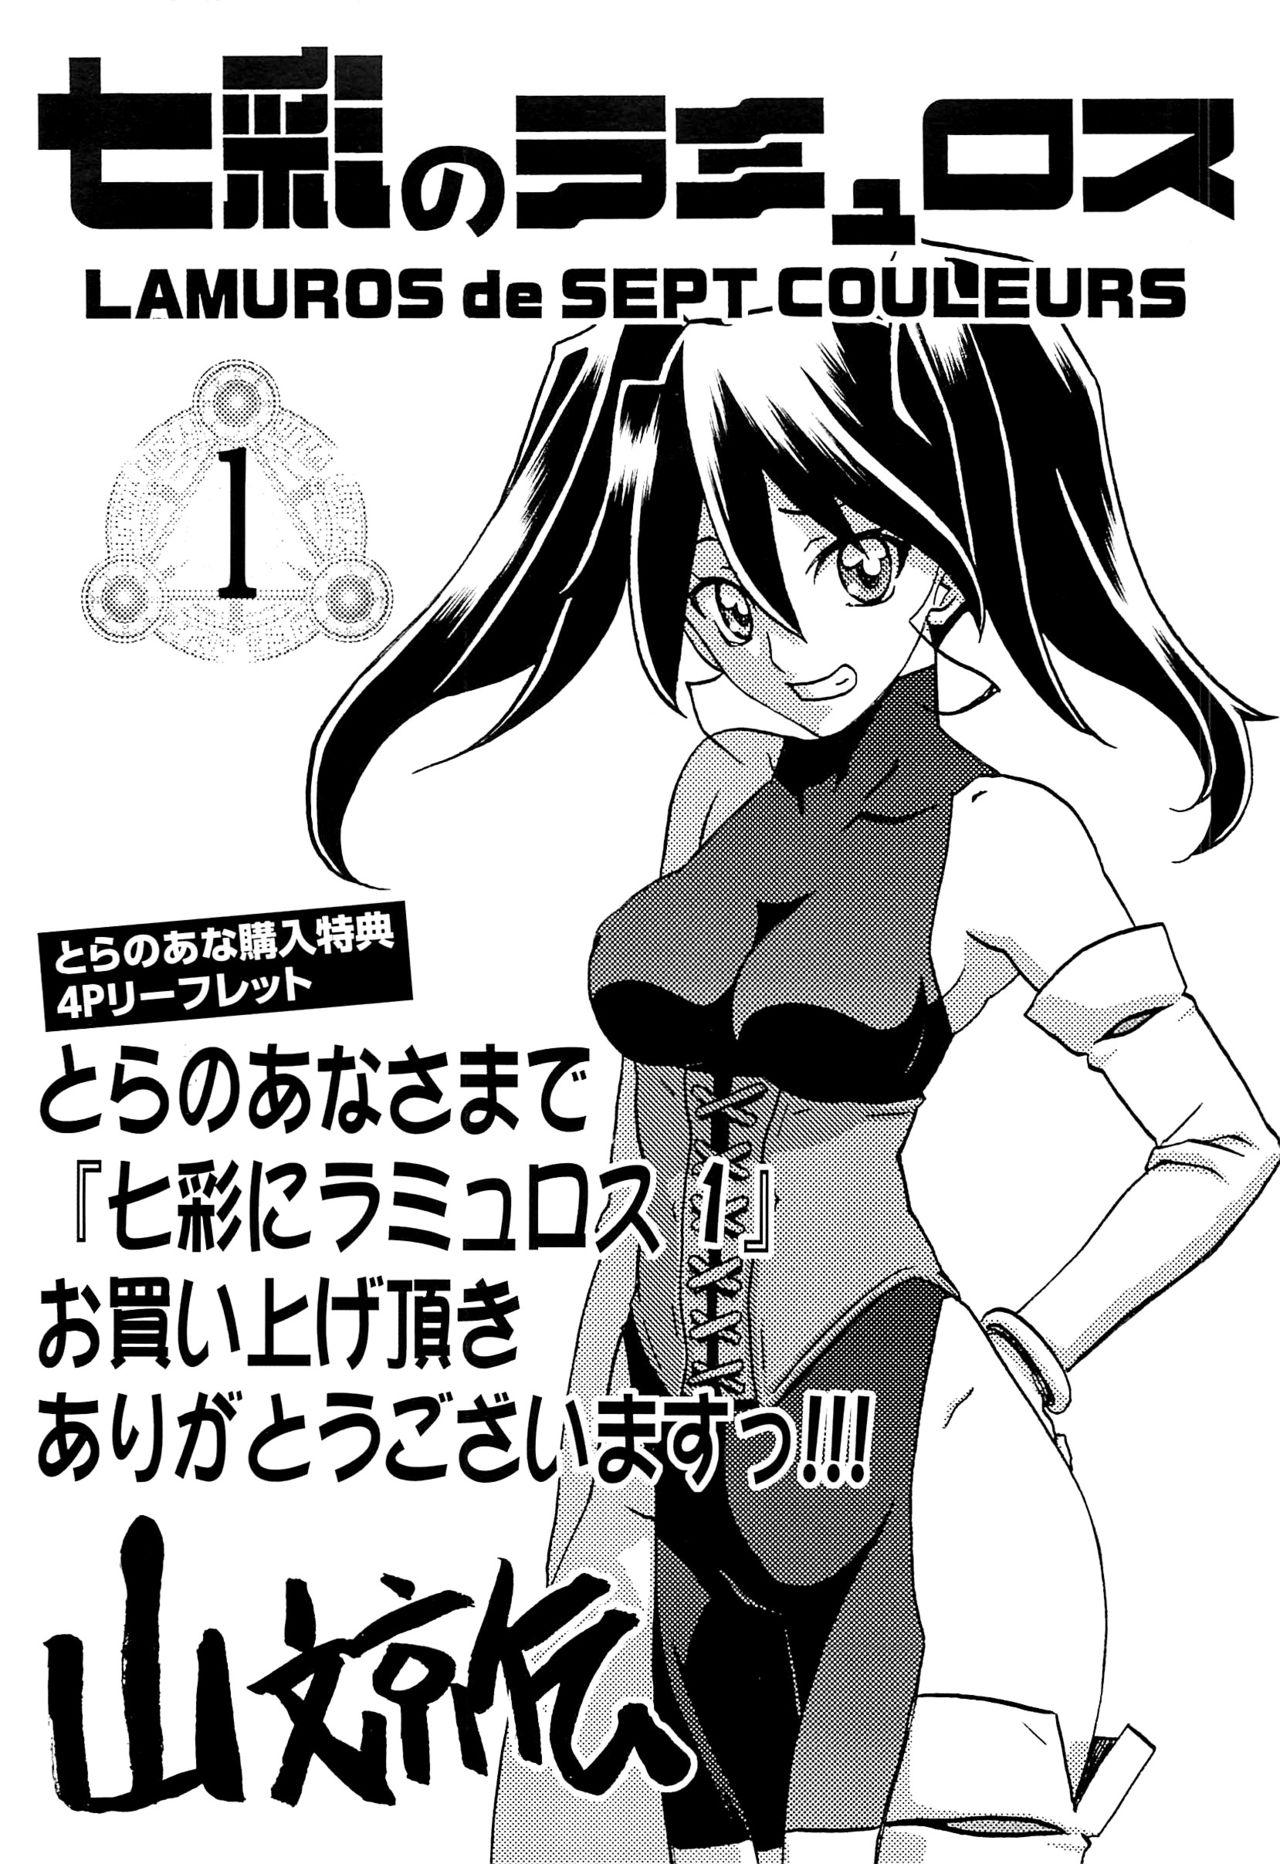 Bottom Shichisai no Lamuros Vol.1 Toranoana Tokuten 4P Leaflet 8teenxxx - Page 1